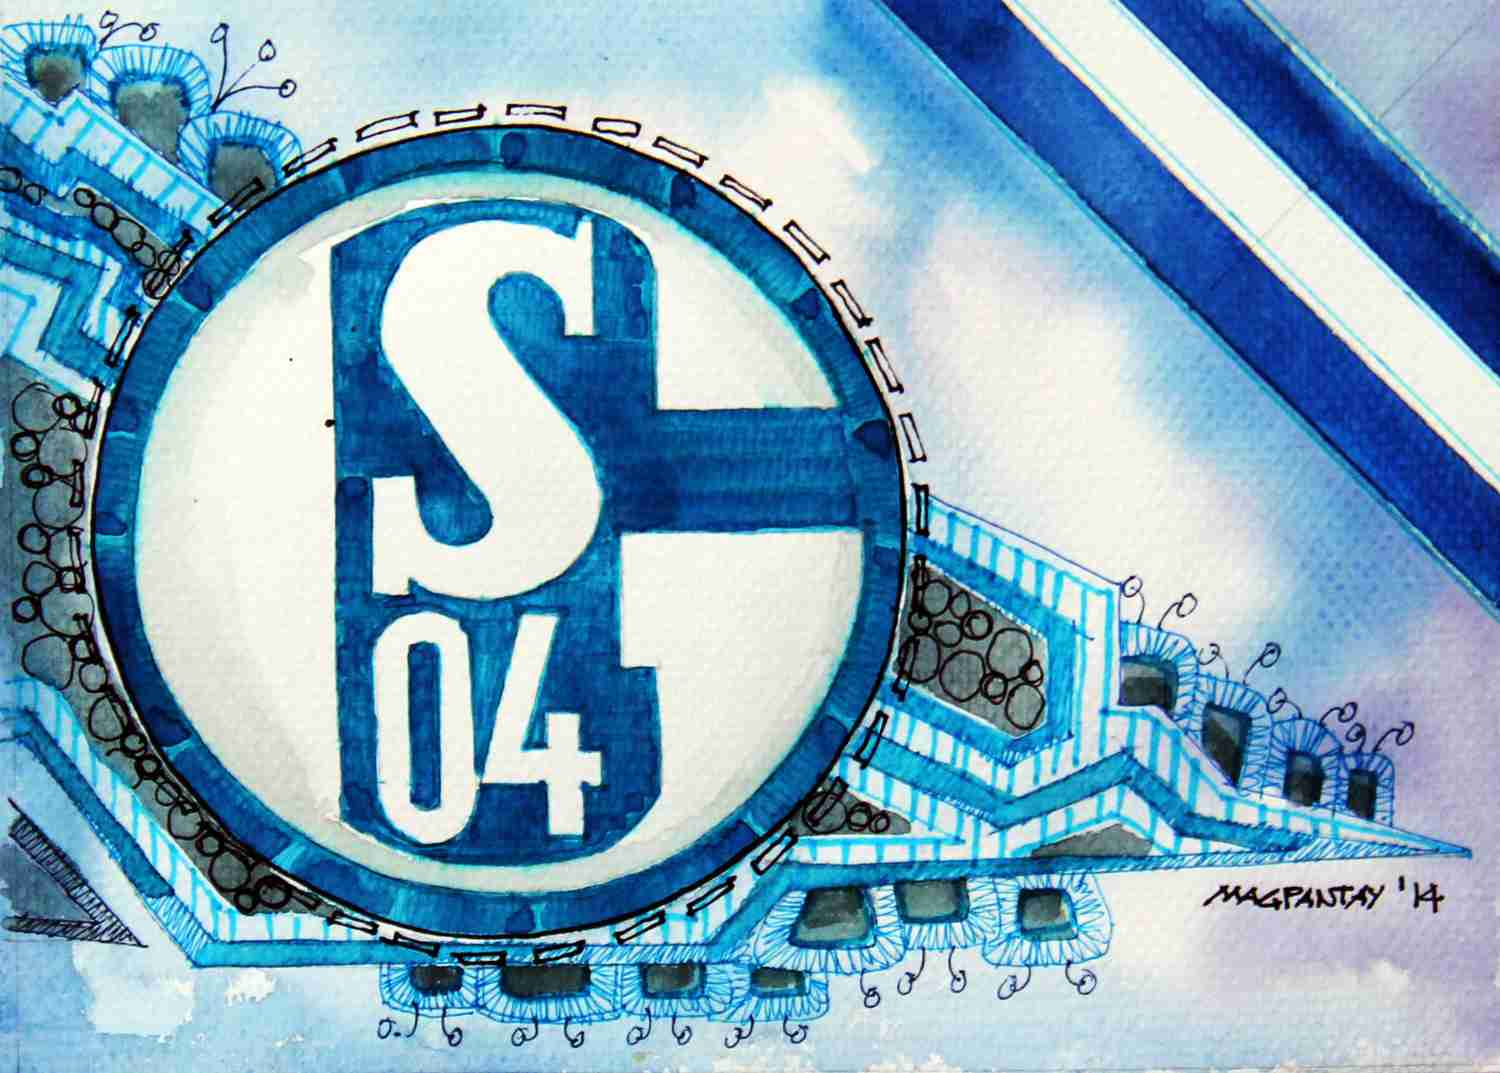 _FC Schalke 04 - Wappen mit Farben